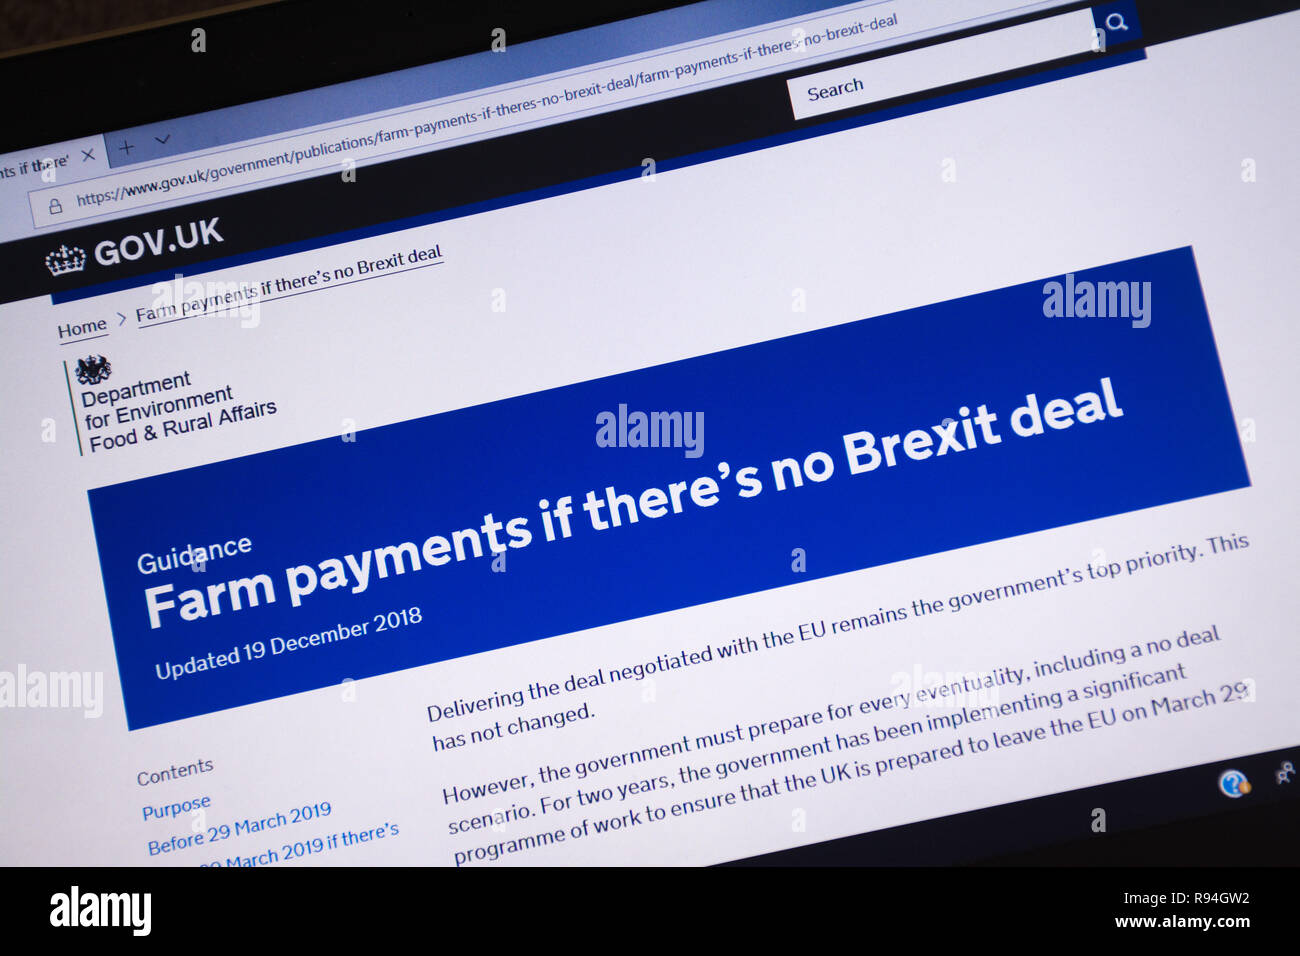 Immagine del calcolatore del gov.uk sito web che mostra informazioni e consigli circa i pagamenti alle aziende agricole se non vi è alcuna trattativa Brexit Foto Stock